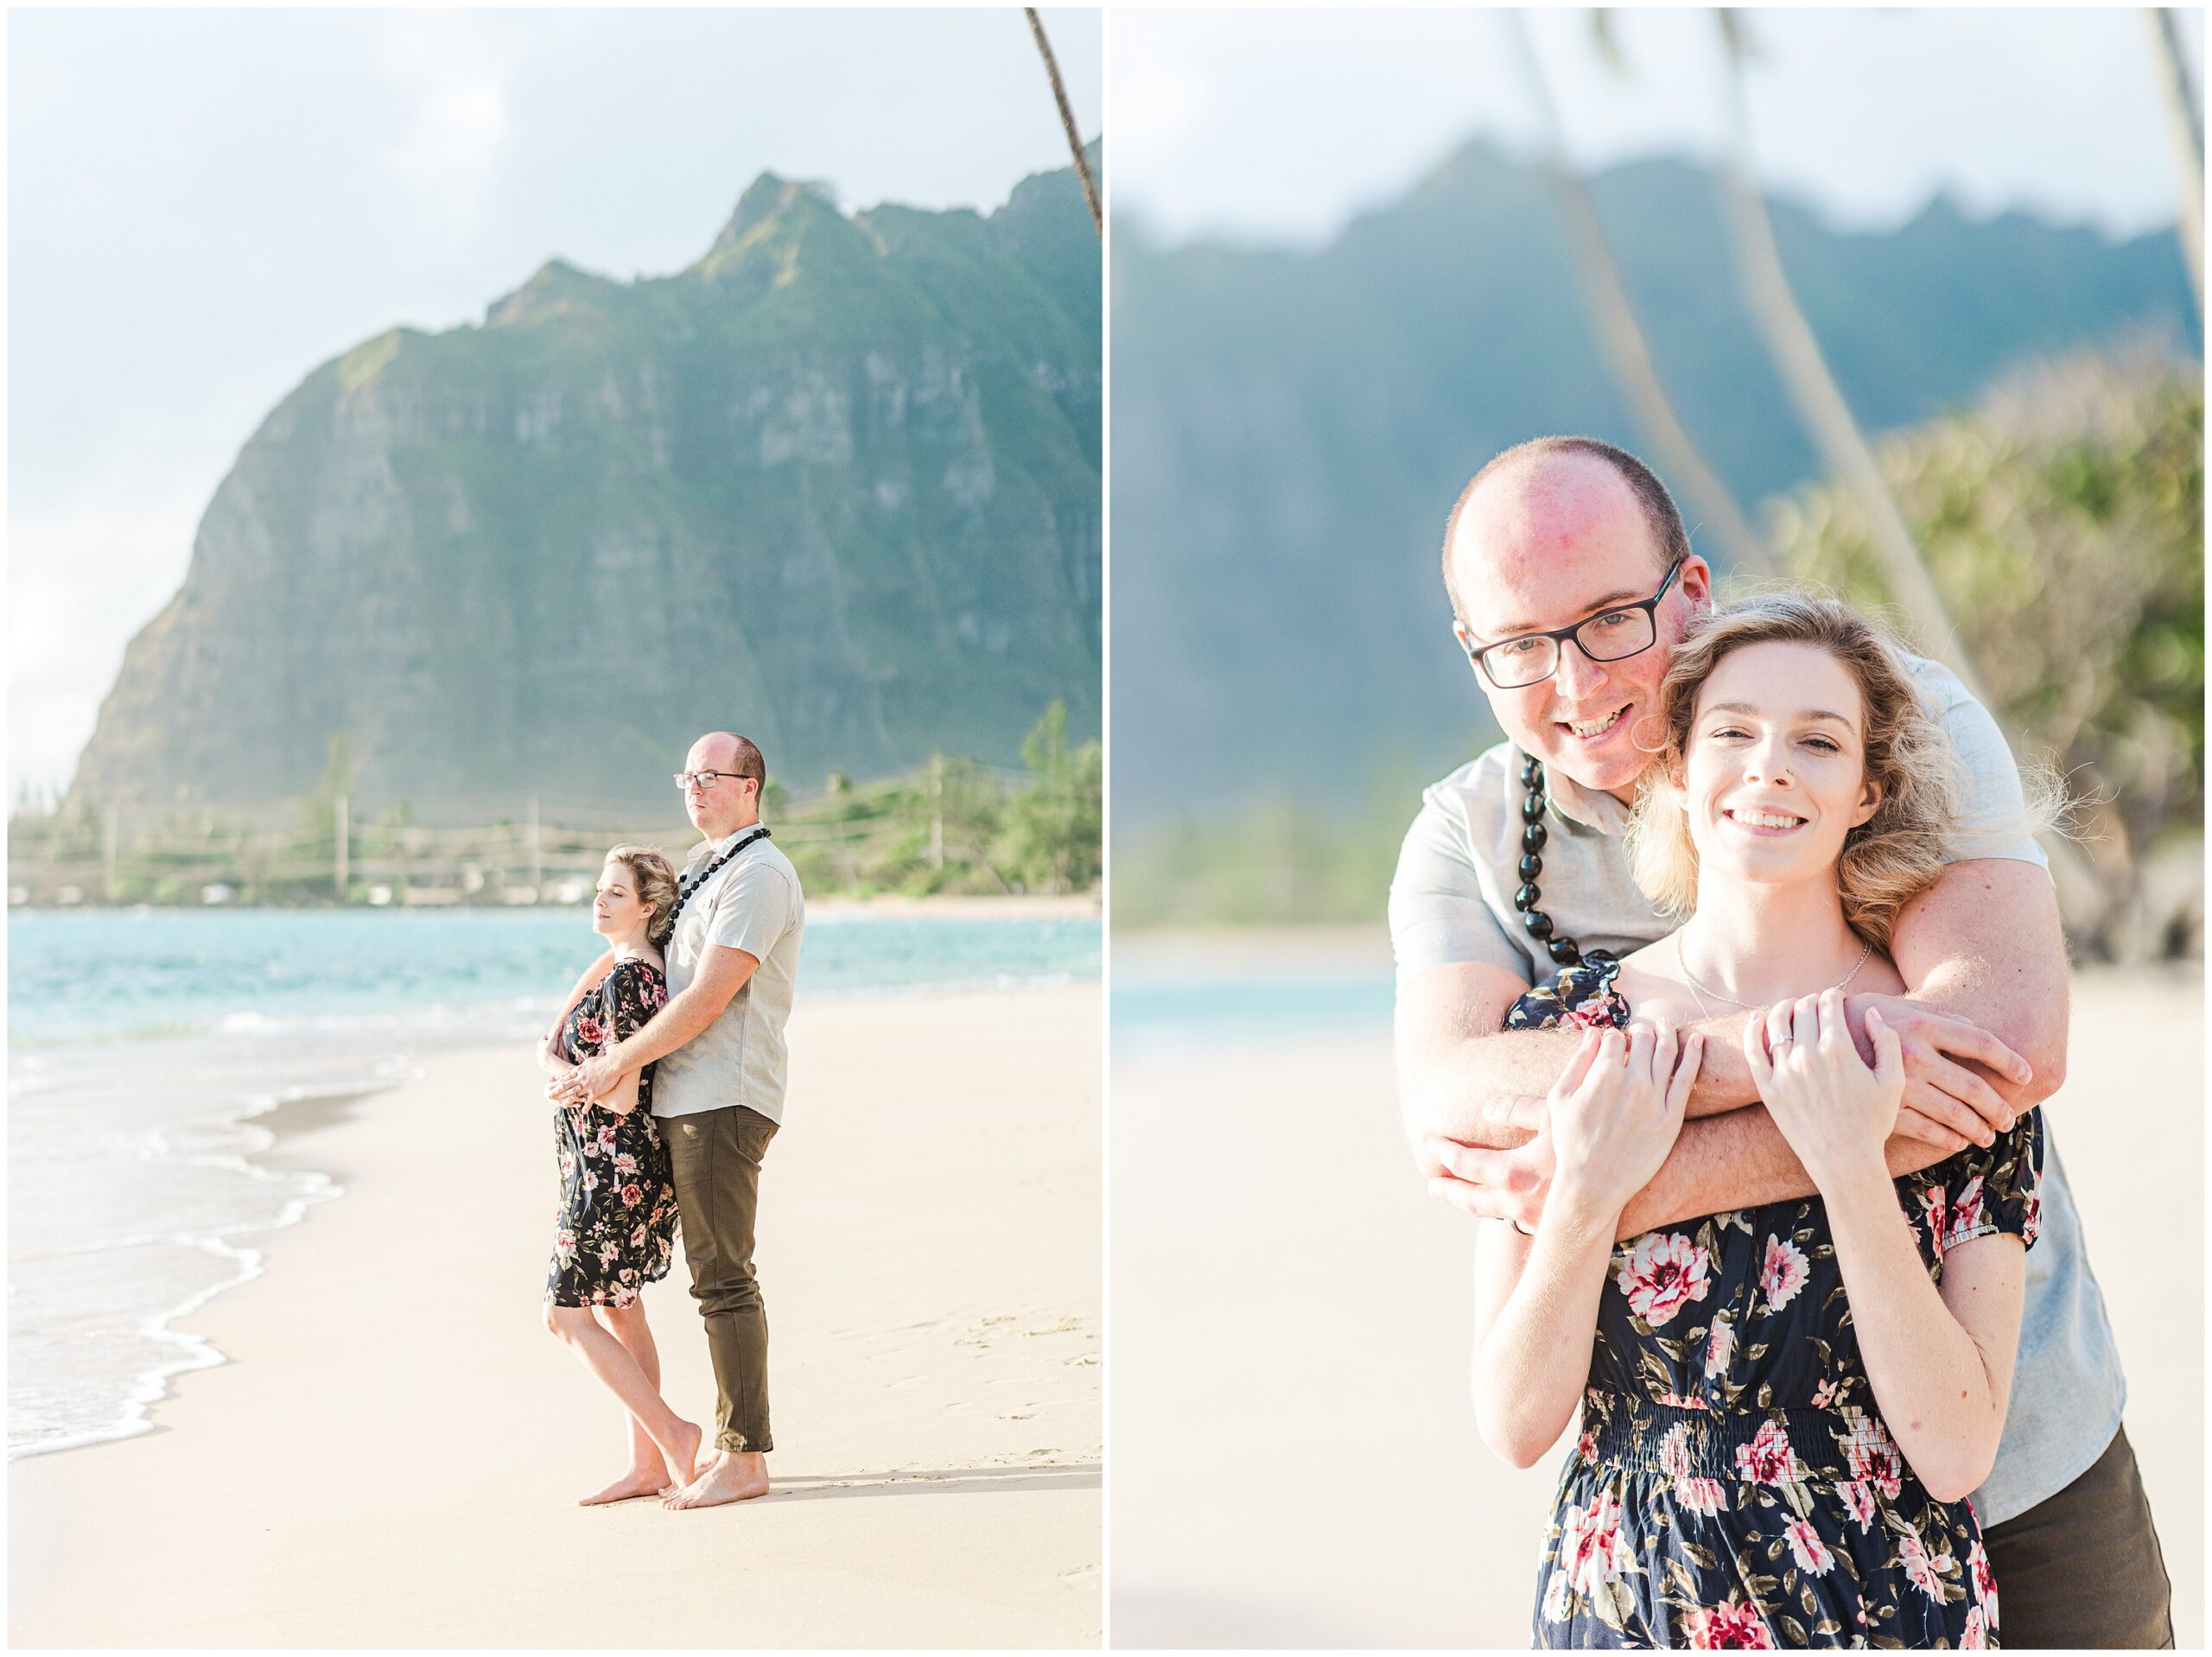 Engagement photos at Ka'a'a'wa Beach on Oahu